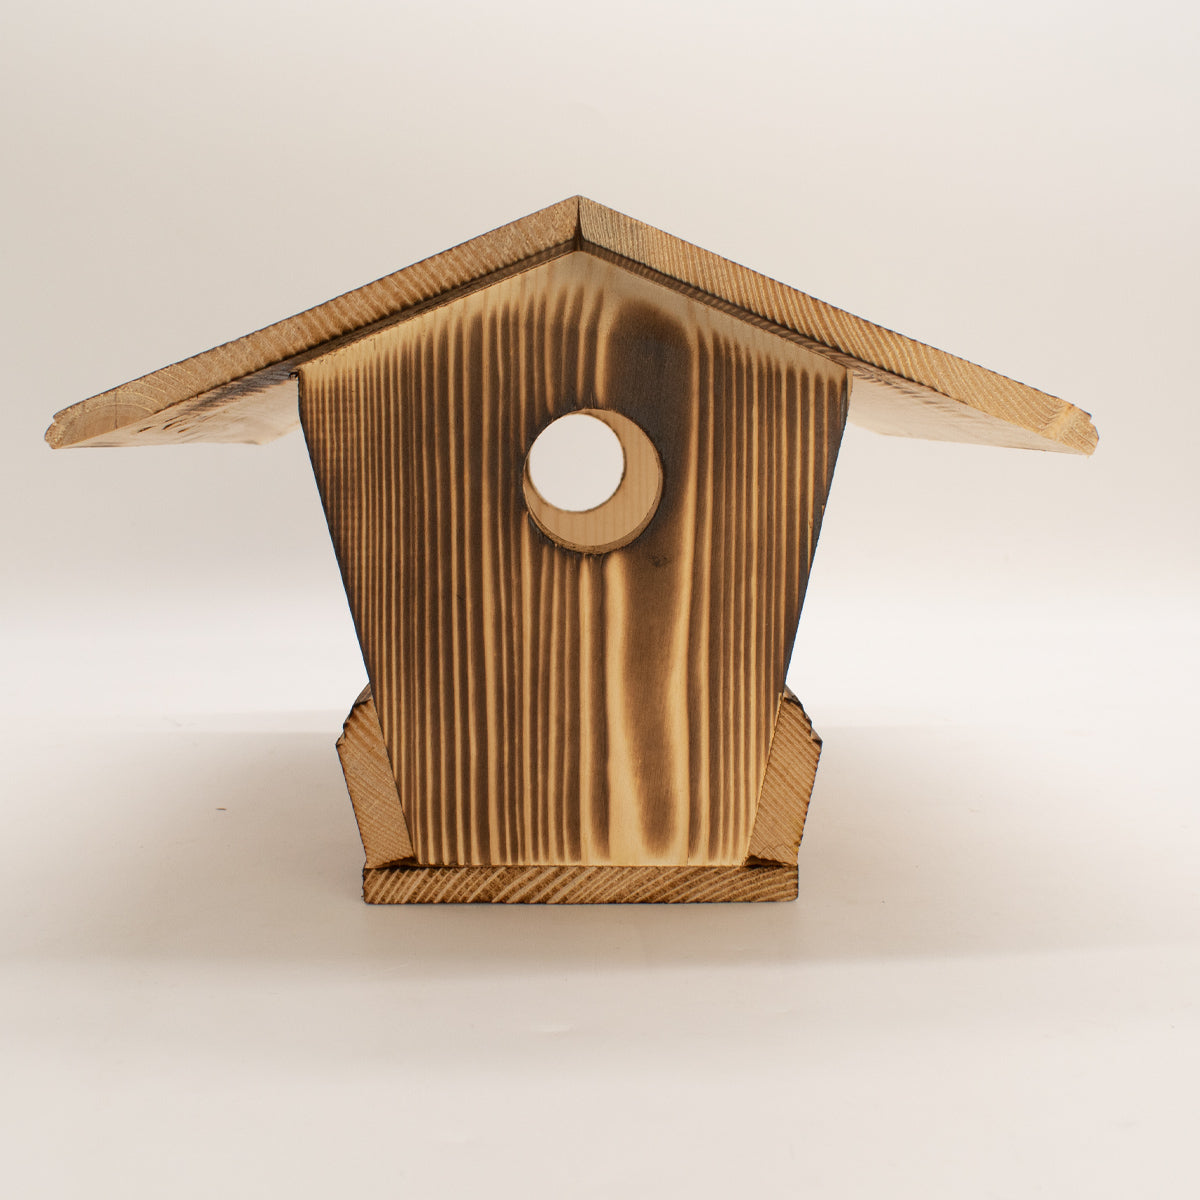 Vogelfutterhaus im schlichten Design aus gebrannter Fichte